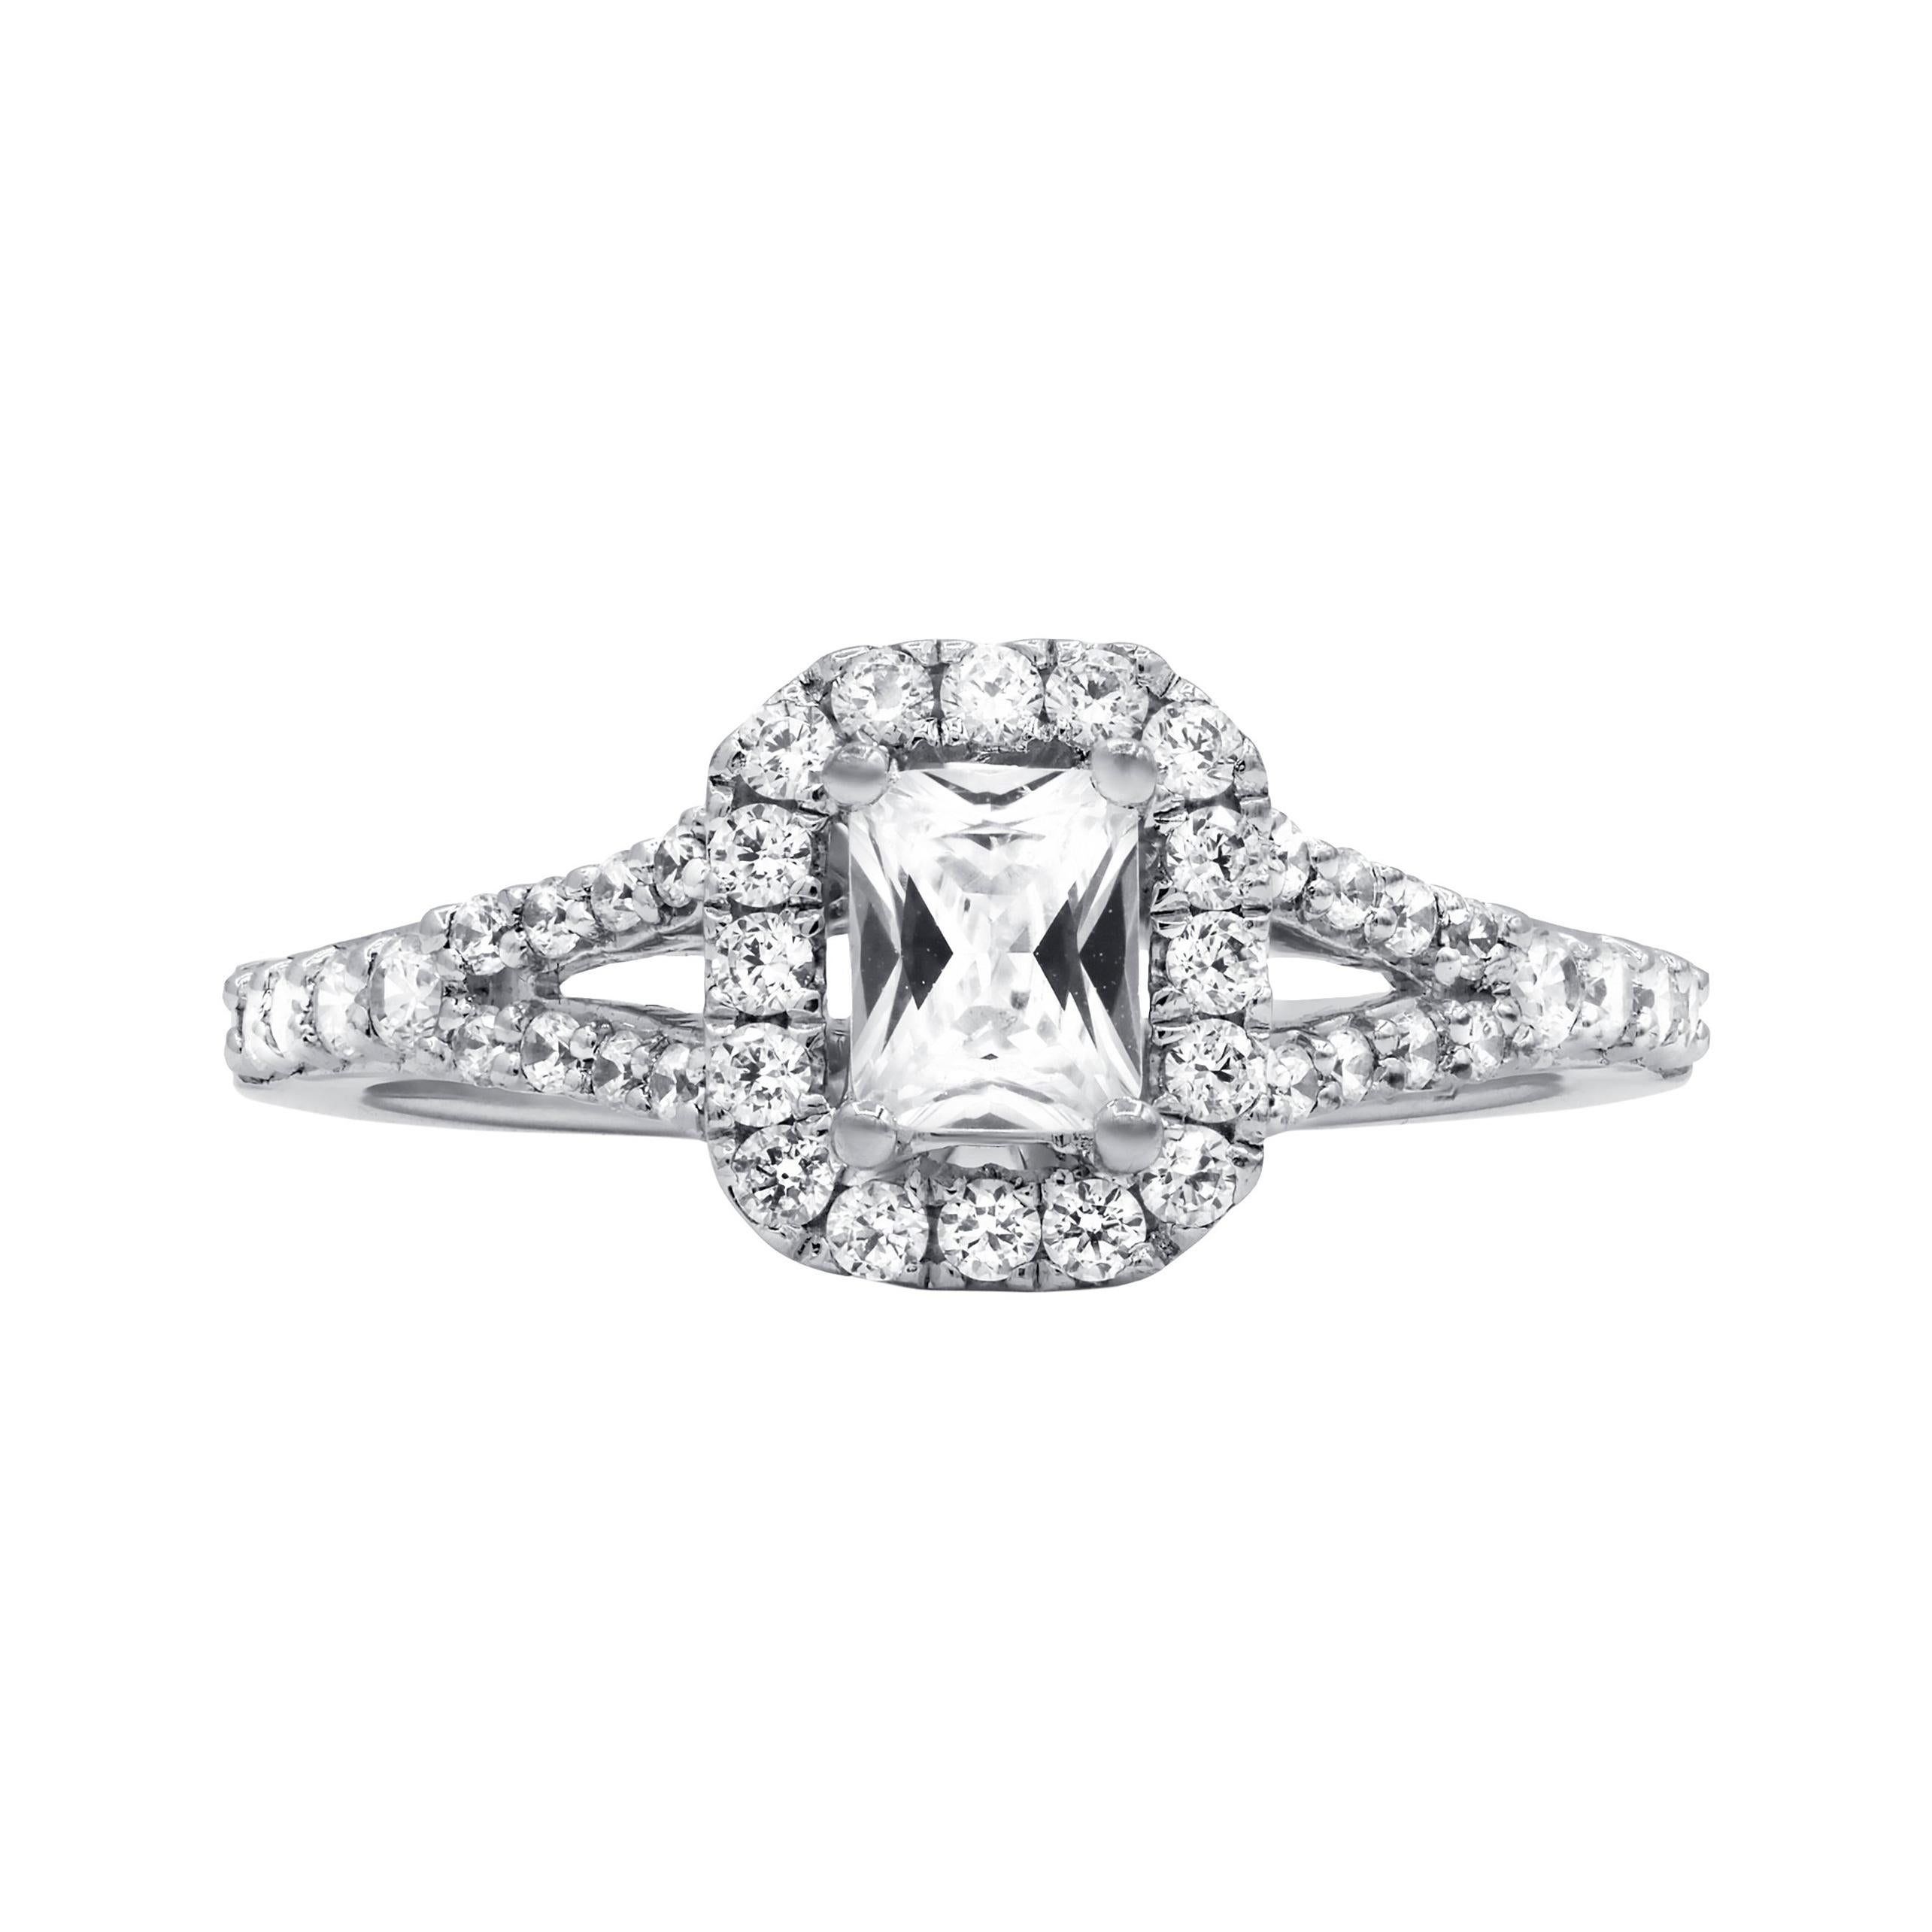 Diana M. Fine Jewelry 14k 1.06 Ct. tw. Diamond Ring